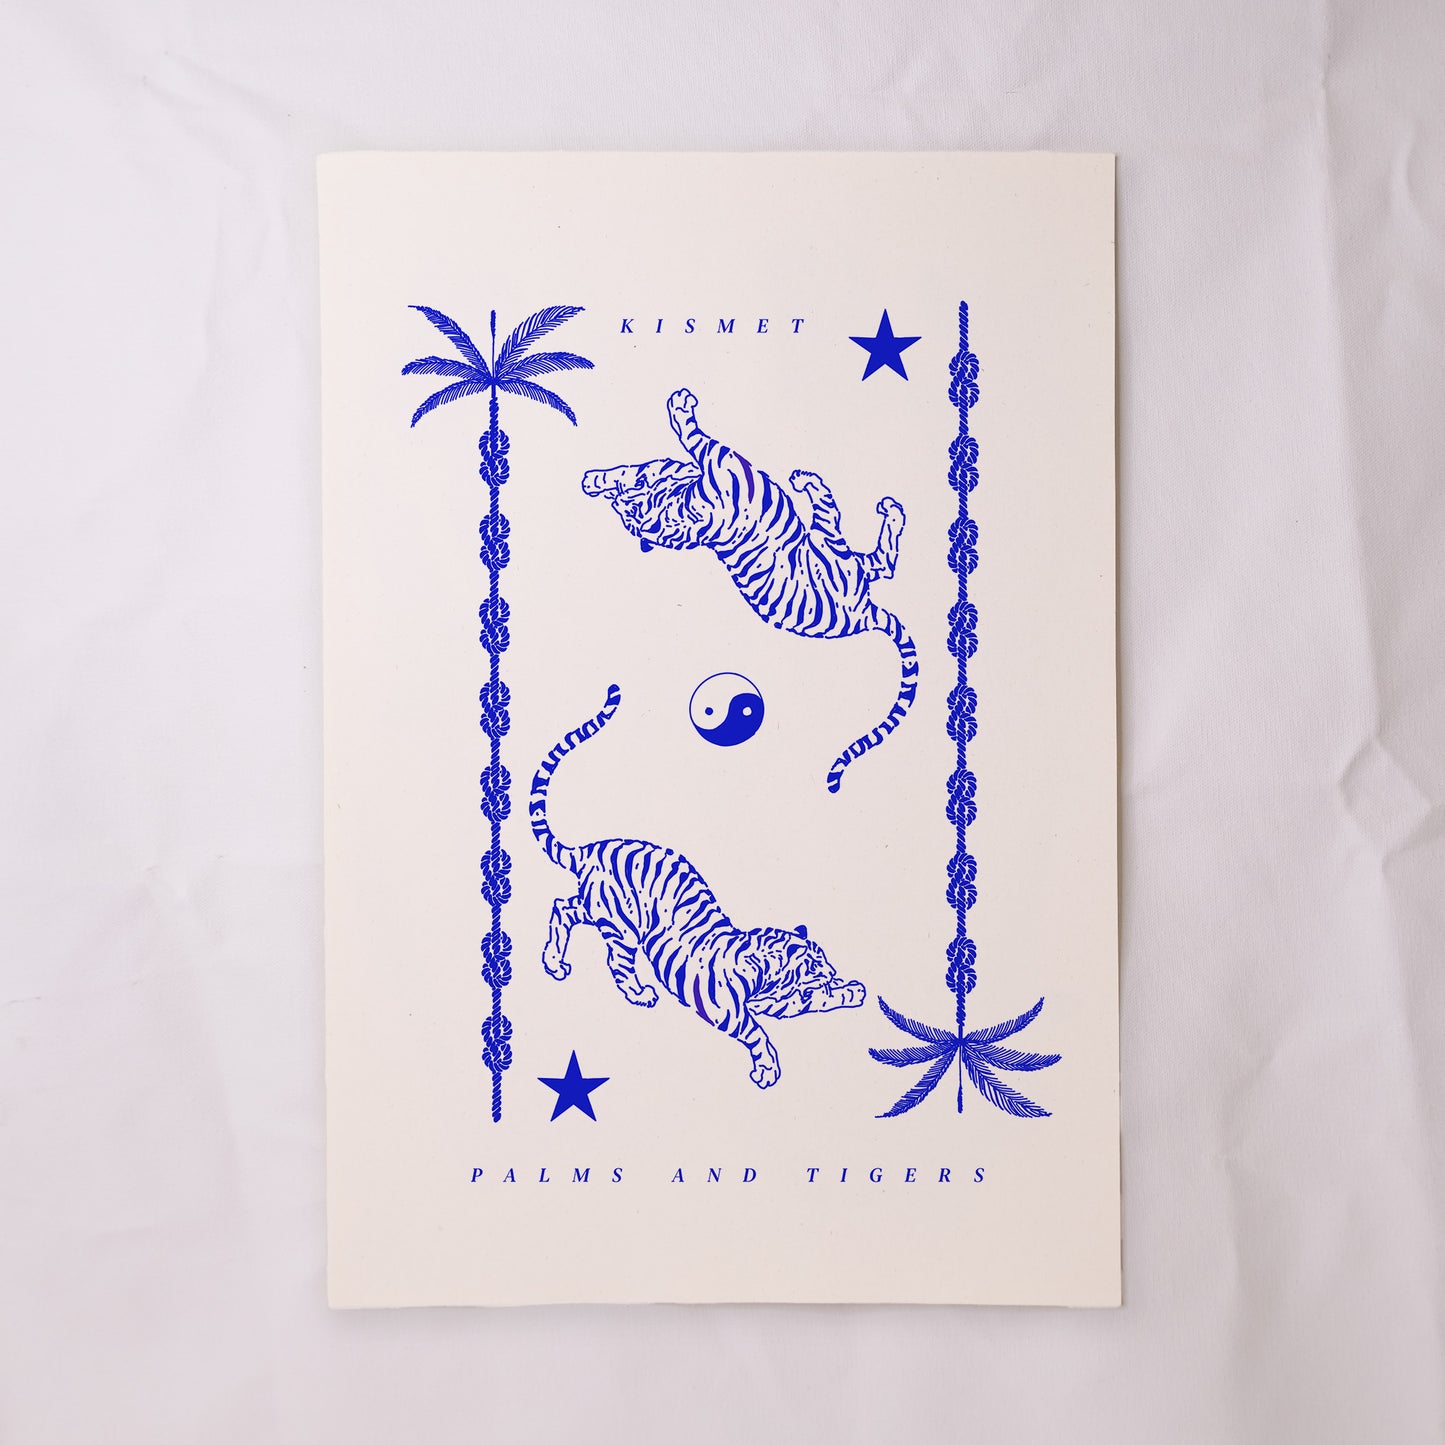 Kismet Tigers Print- Blue